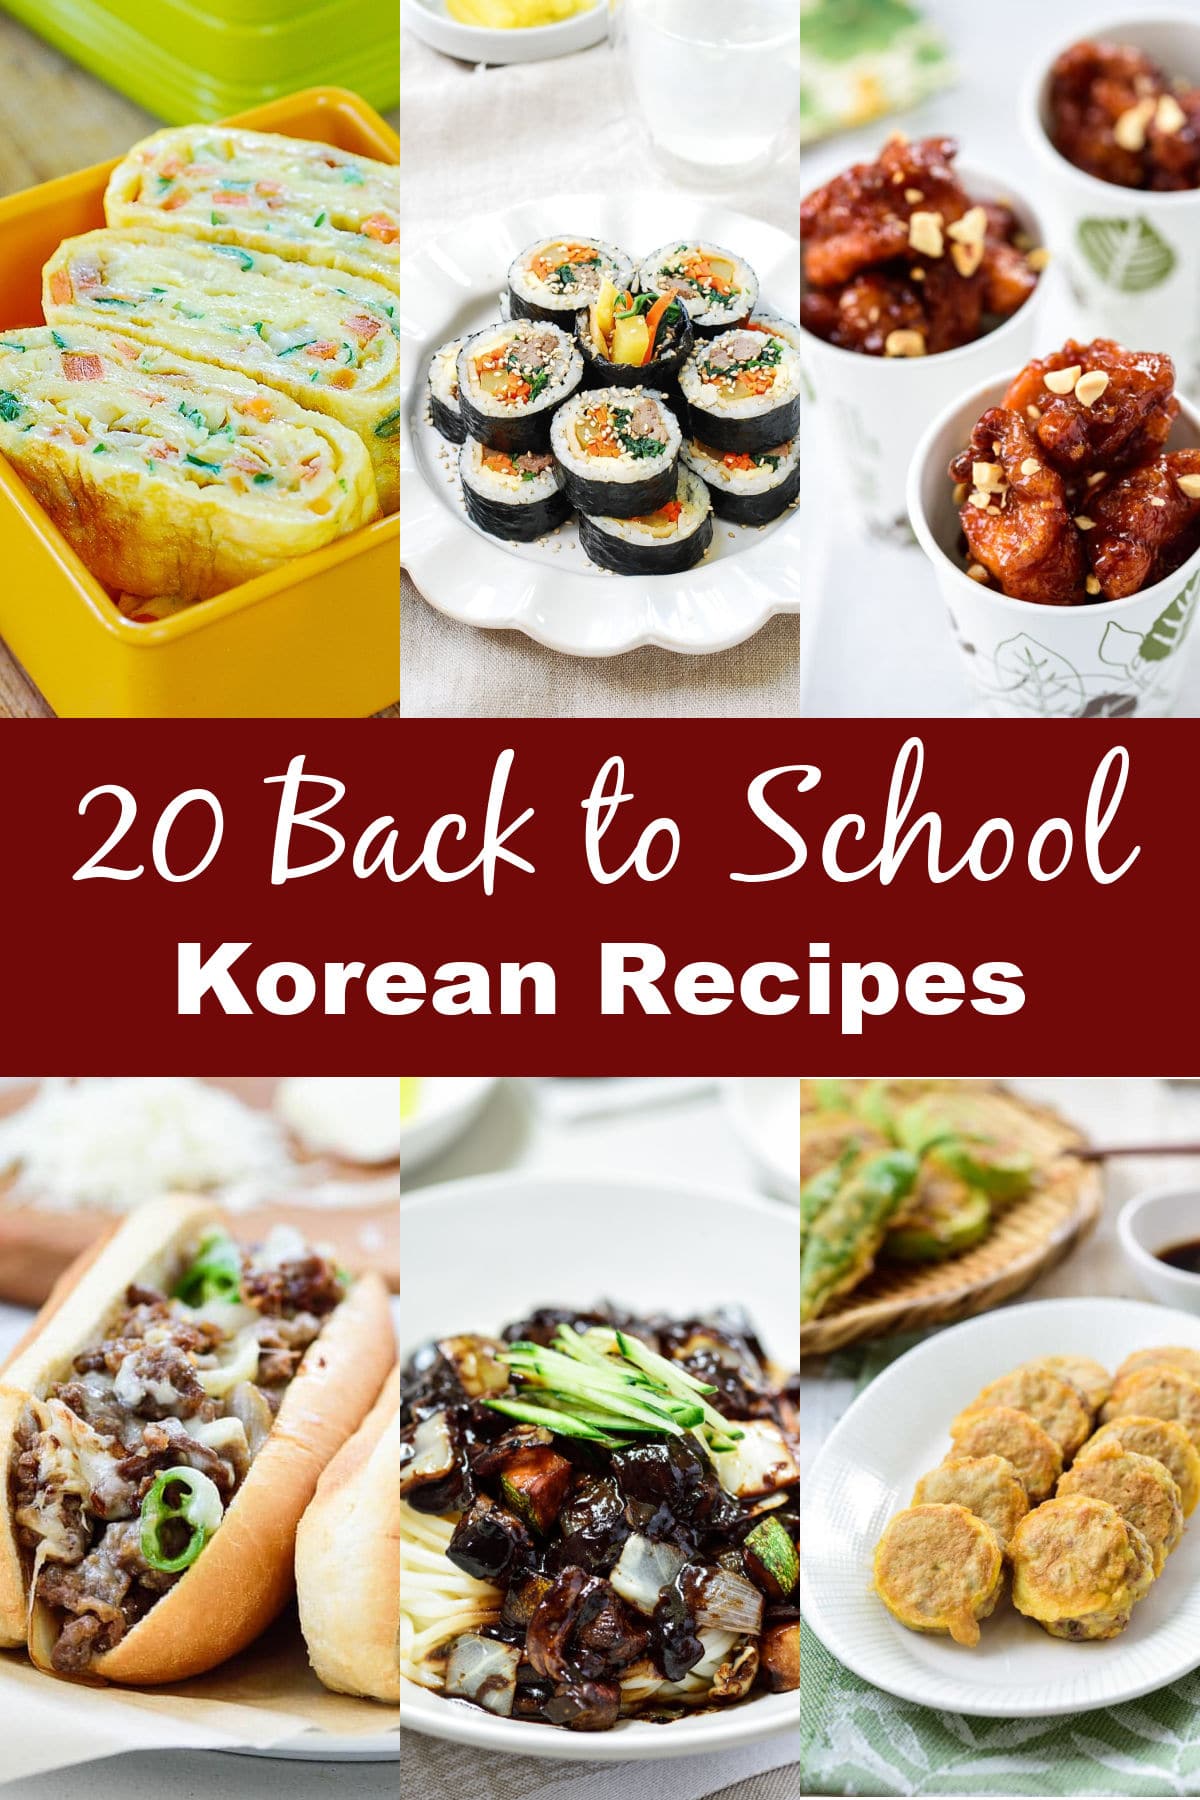 4 × 6 في 9 - 20 وصفات كورية للعودة إلى المدرسة